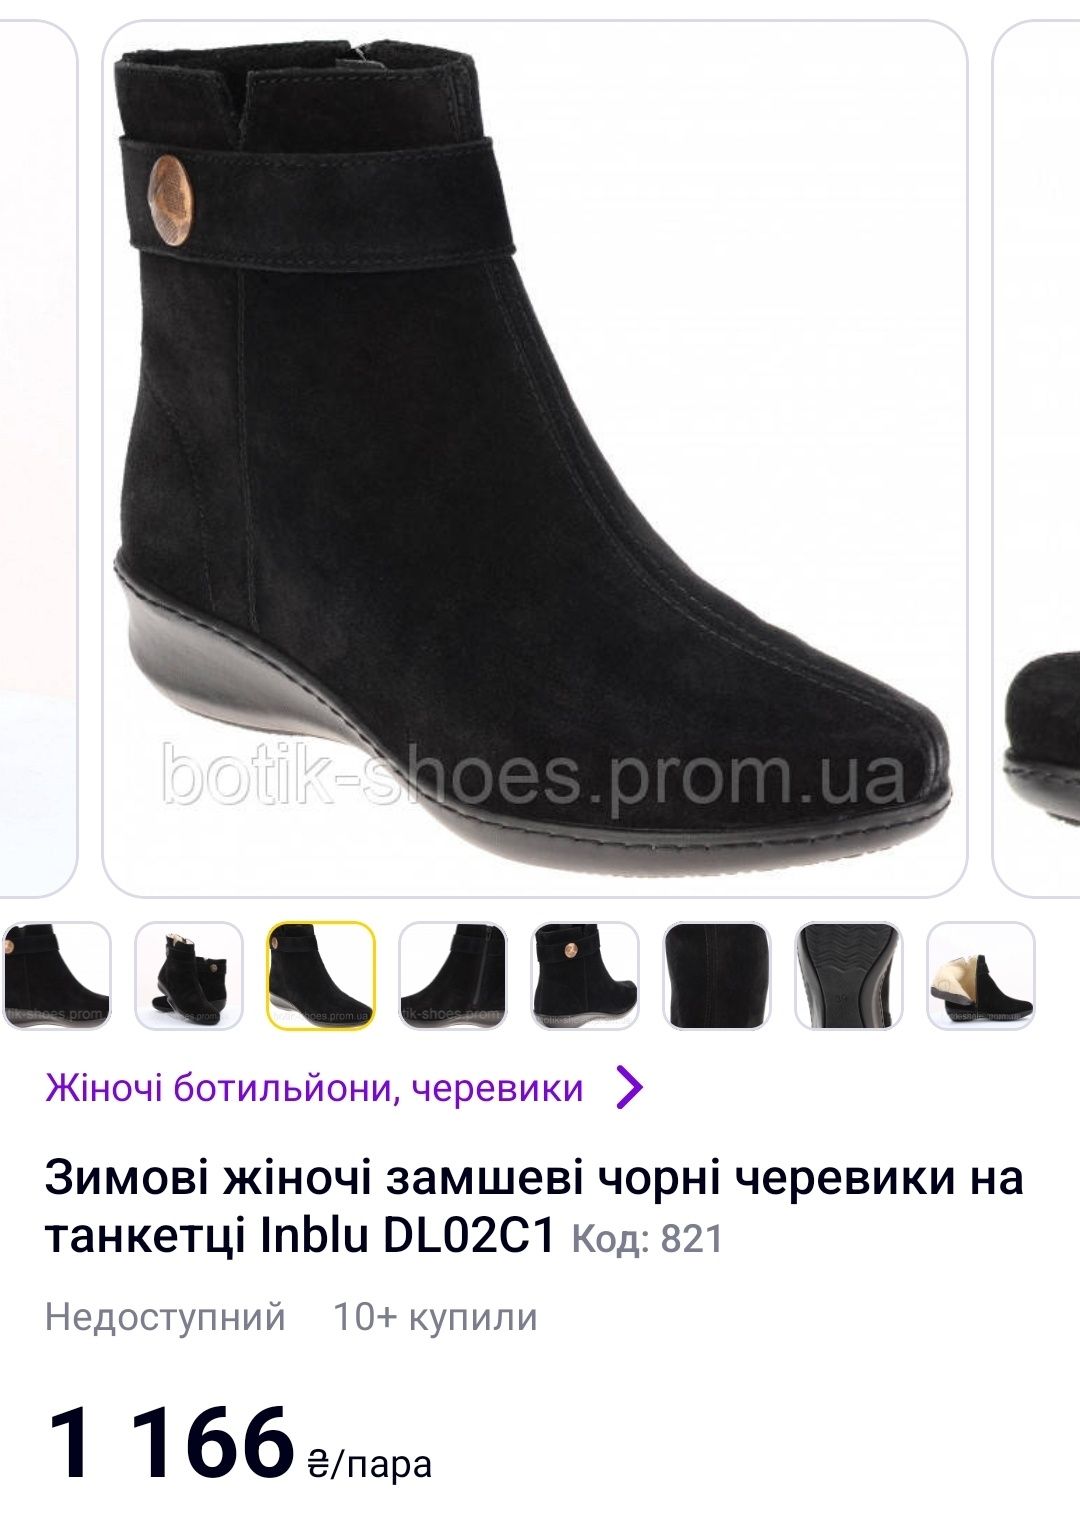 Зимові жіночі замшеві чорні черевики на танкетці Inblu DL02C1